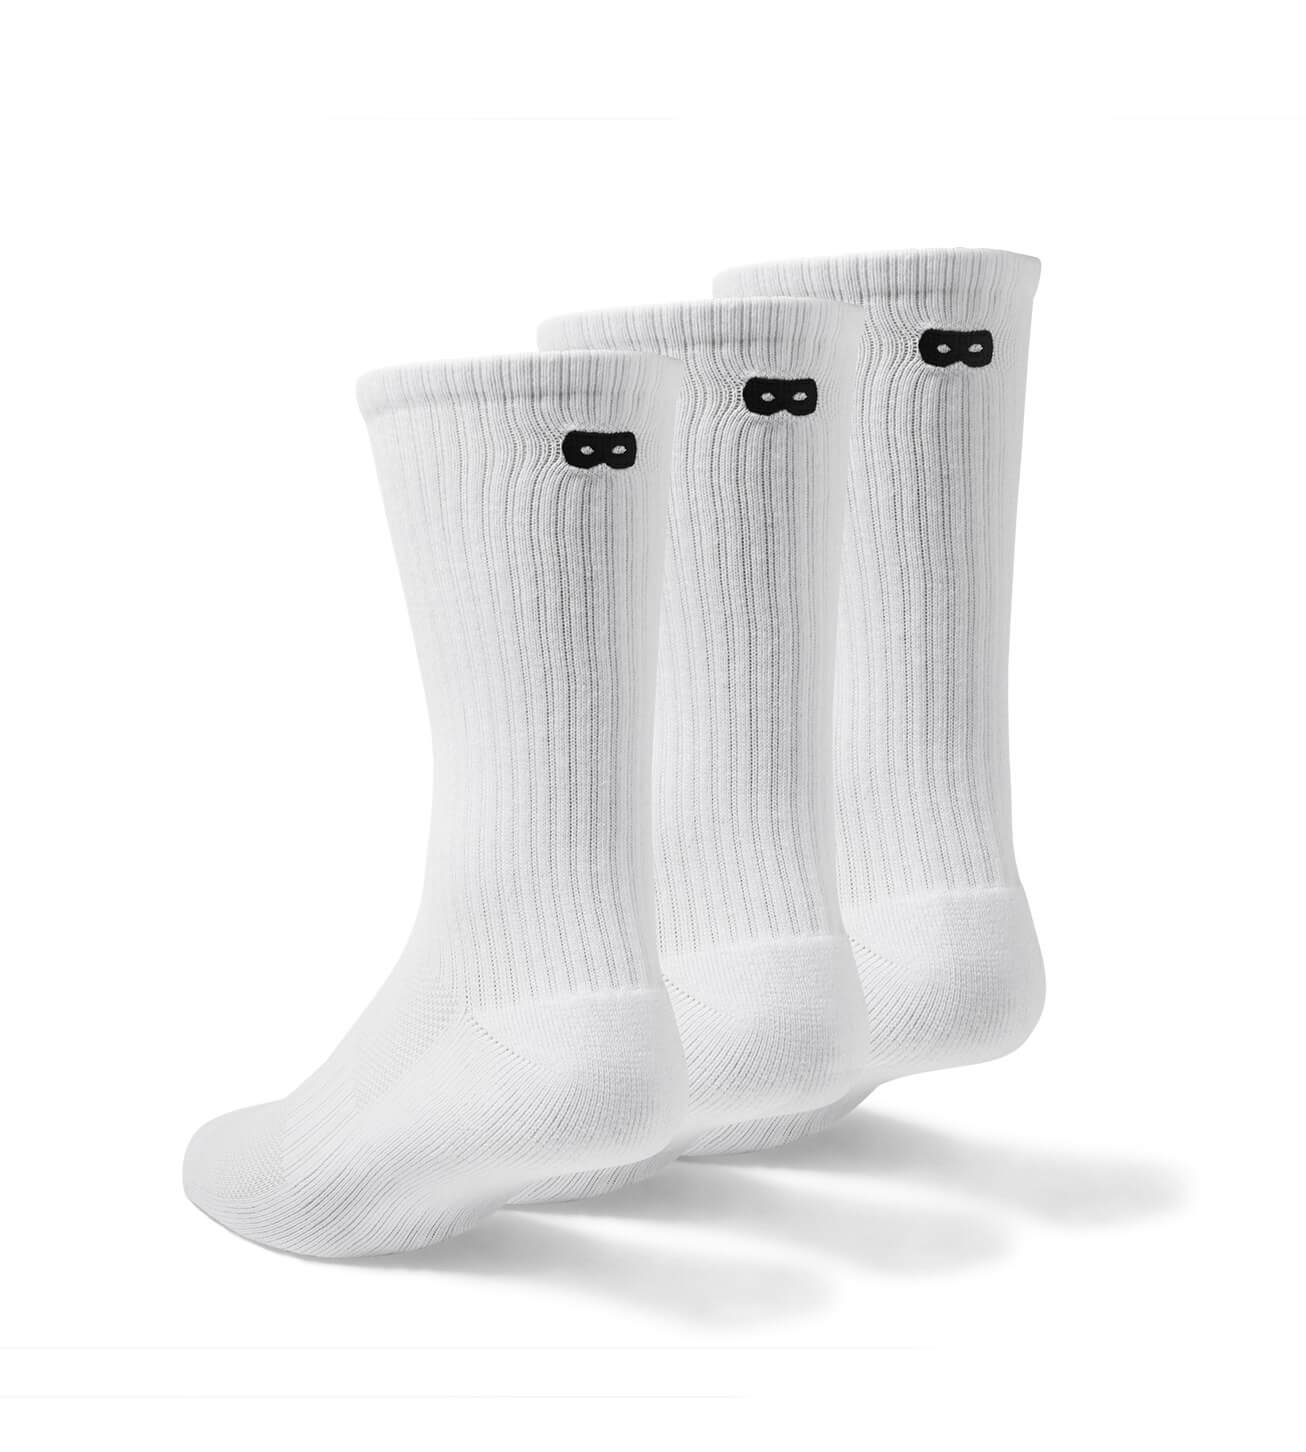 Whiteout Ribbed Men's Crew Socks 3 Pack